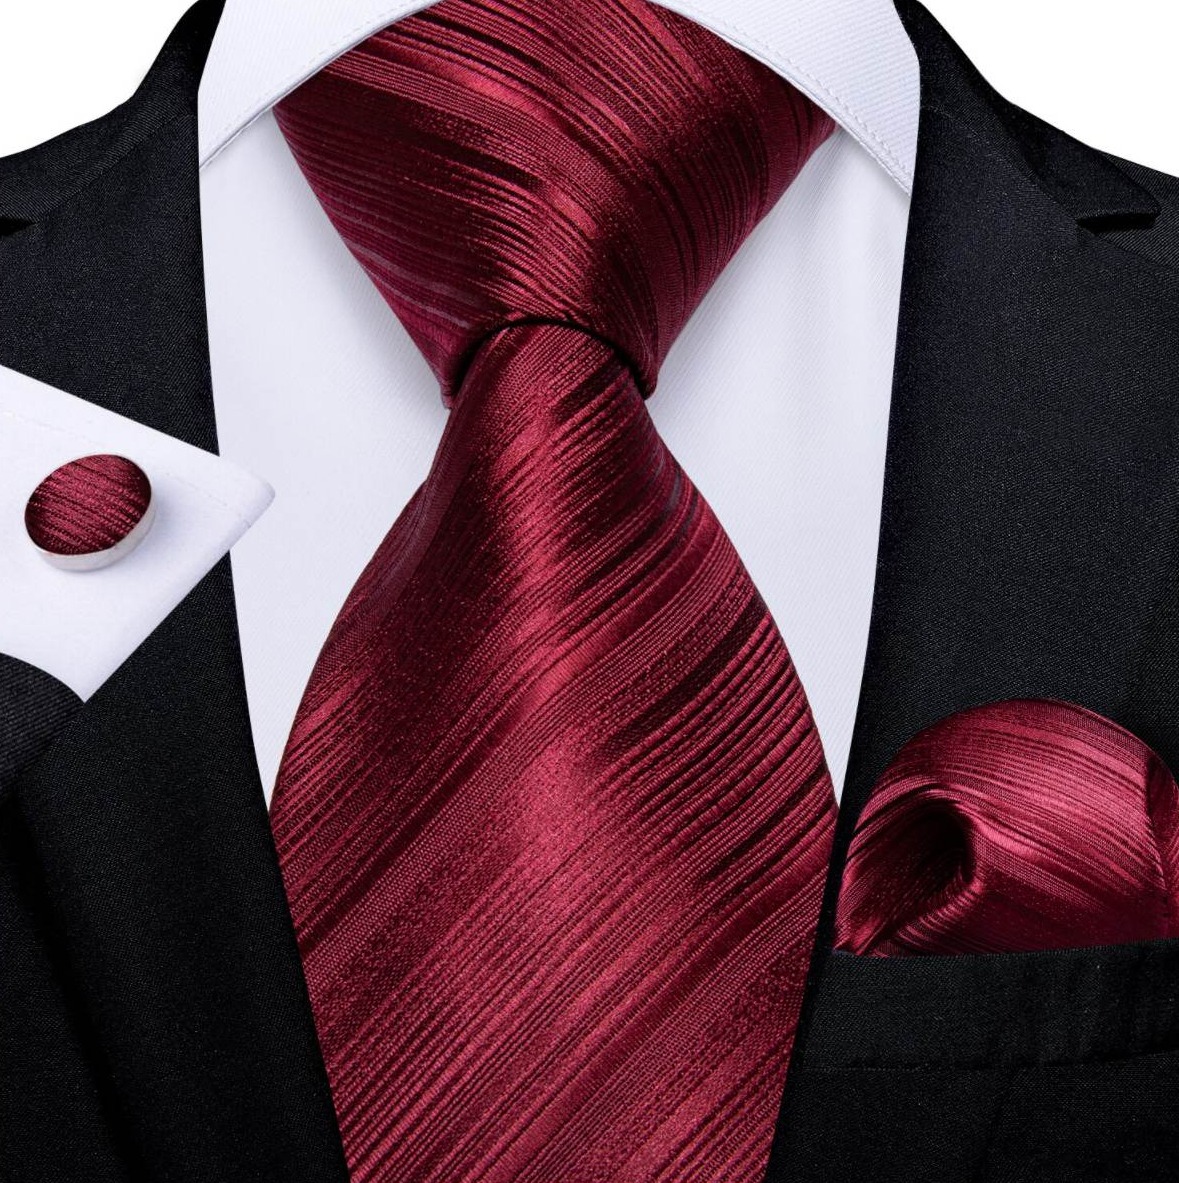 Kravatová sada - kravata, vreckovka a manžetové gombíky s bordovým vzorom